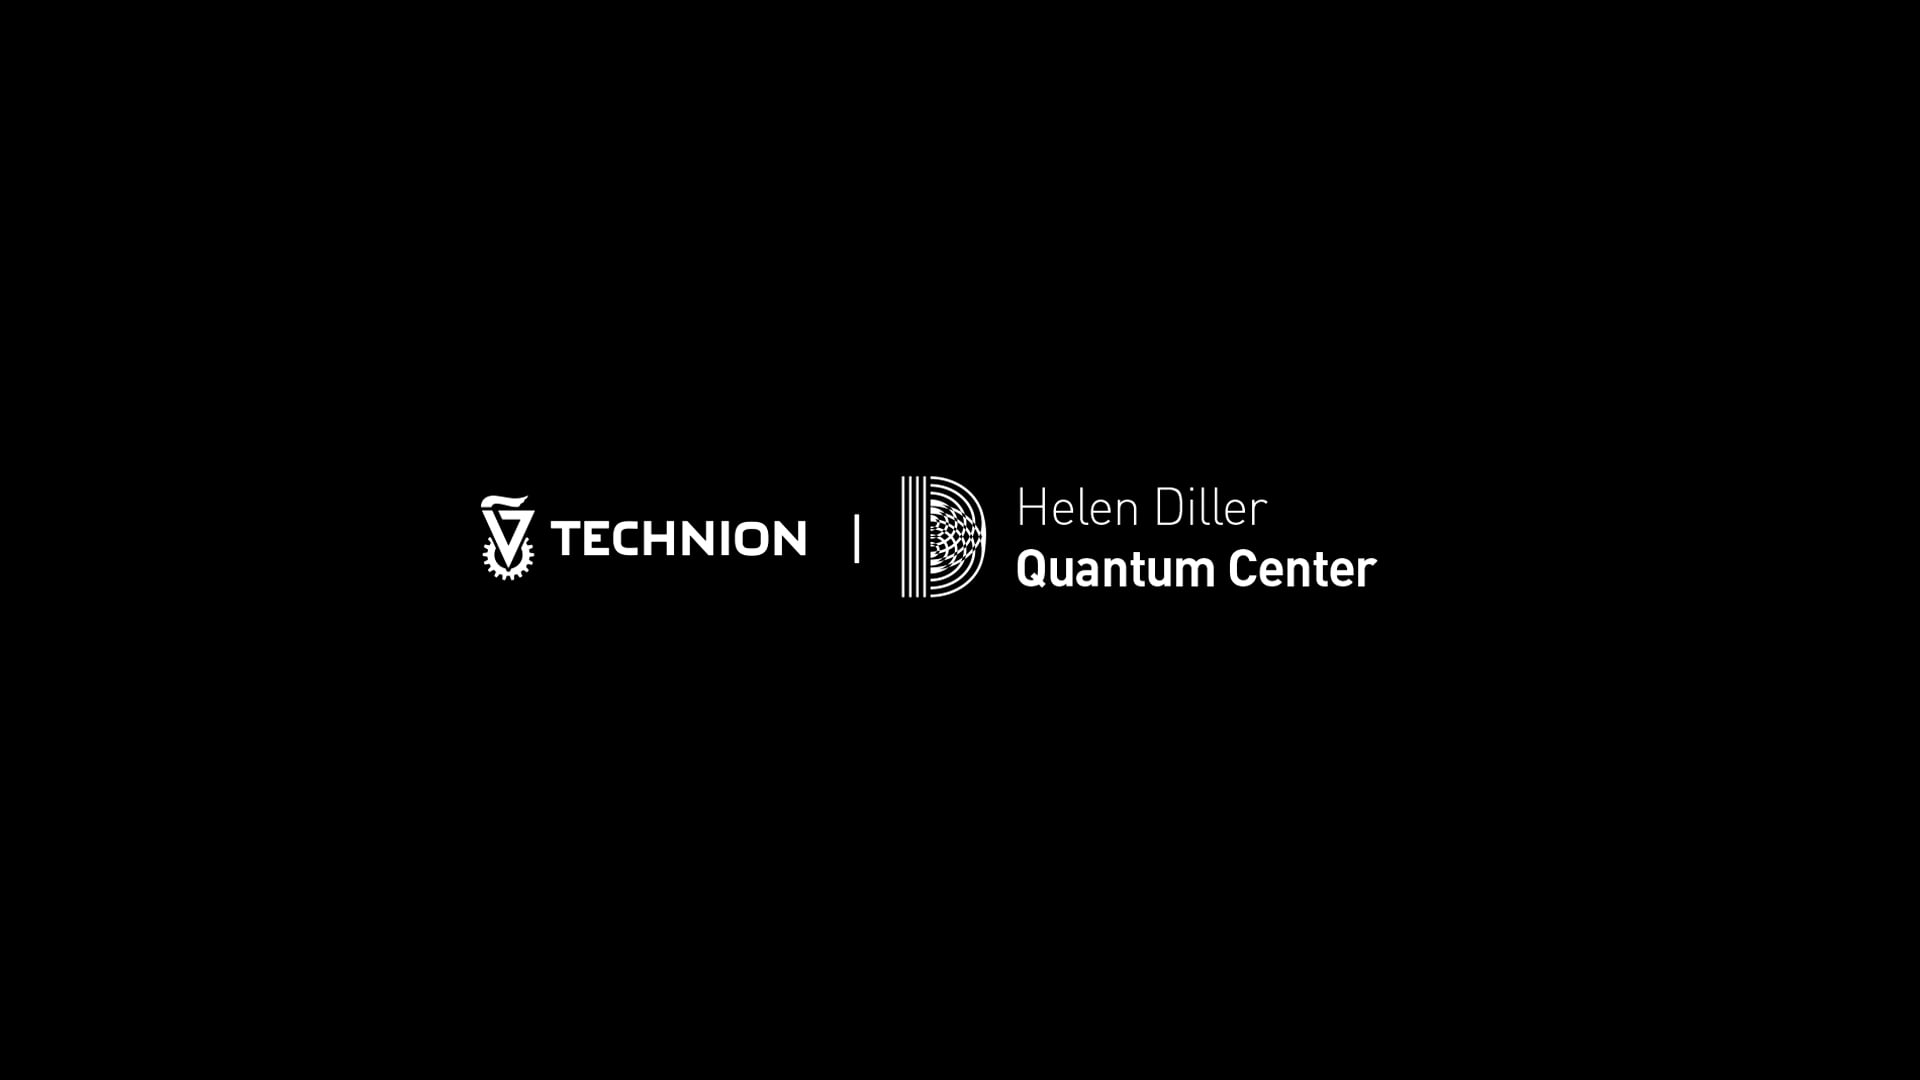 Technion - Helen Diller Quantum Center